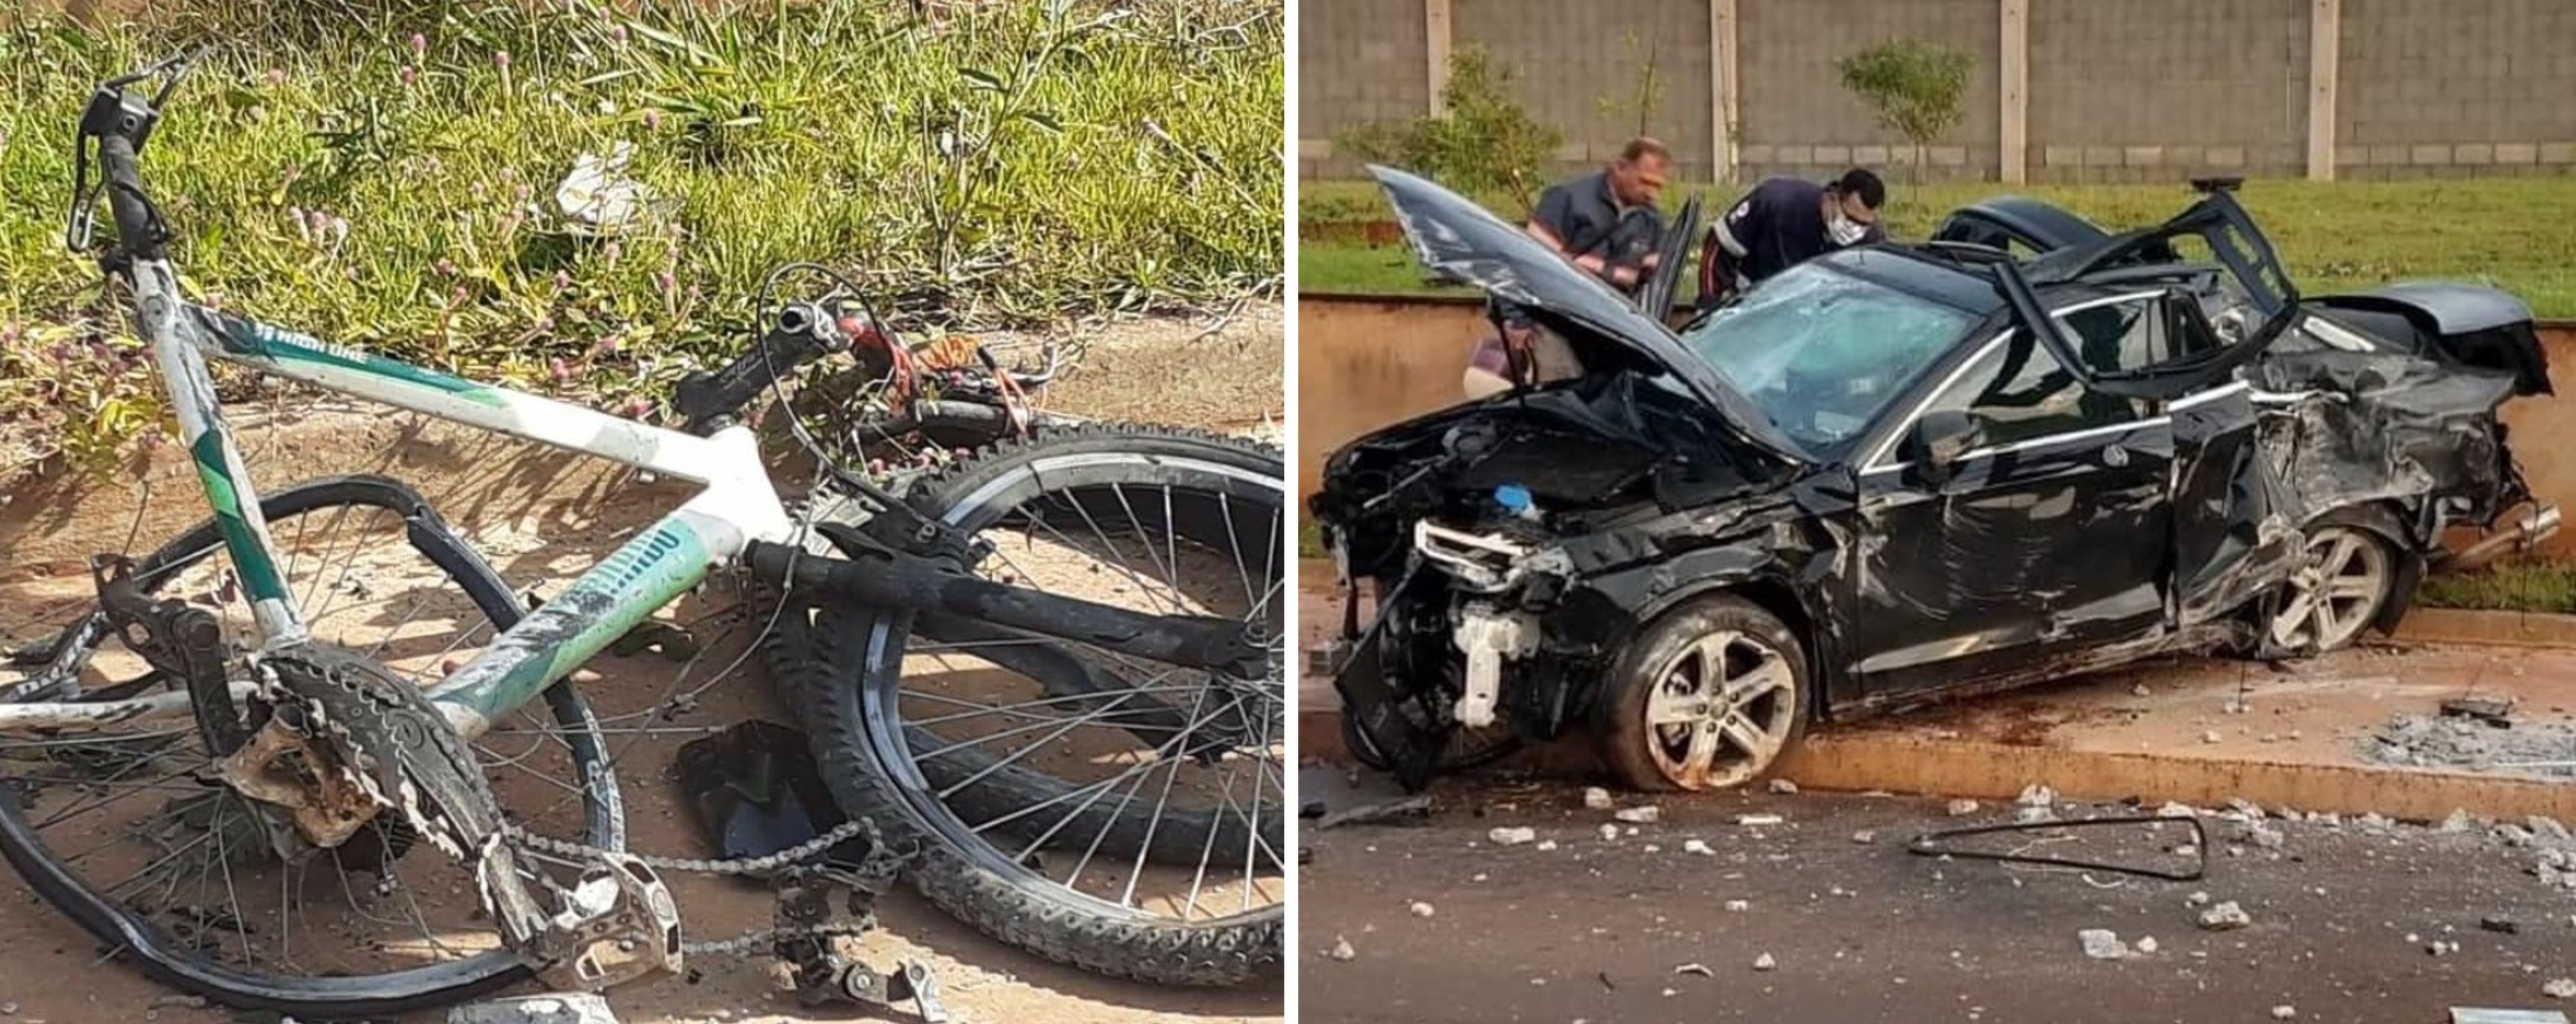 Motorista que atropelou e matou ciclista se apresenta e é liberado após depoimento à polícia de Jaú